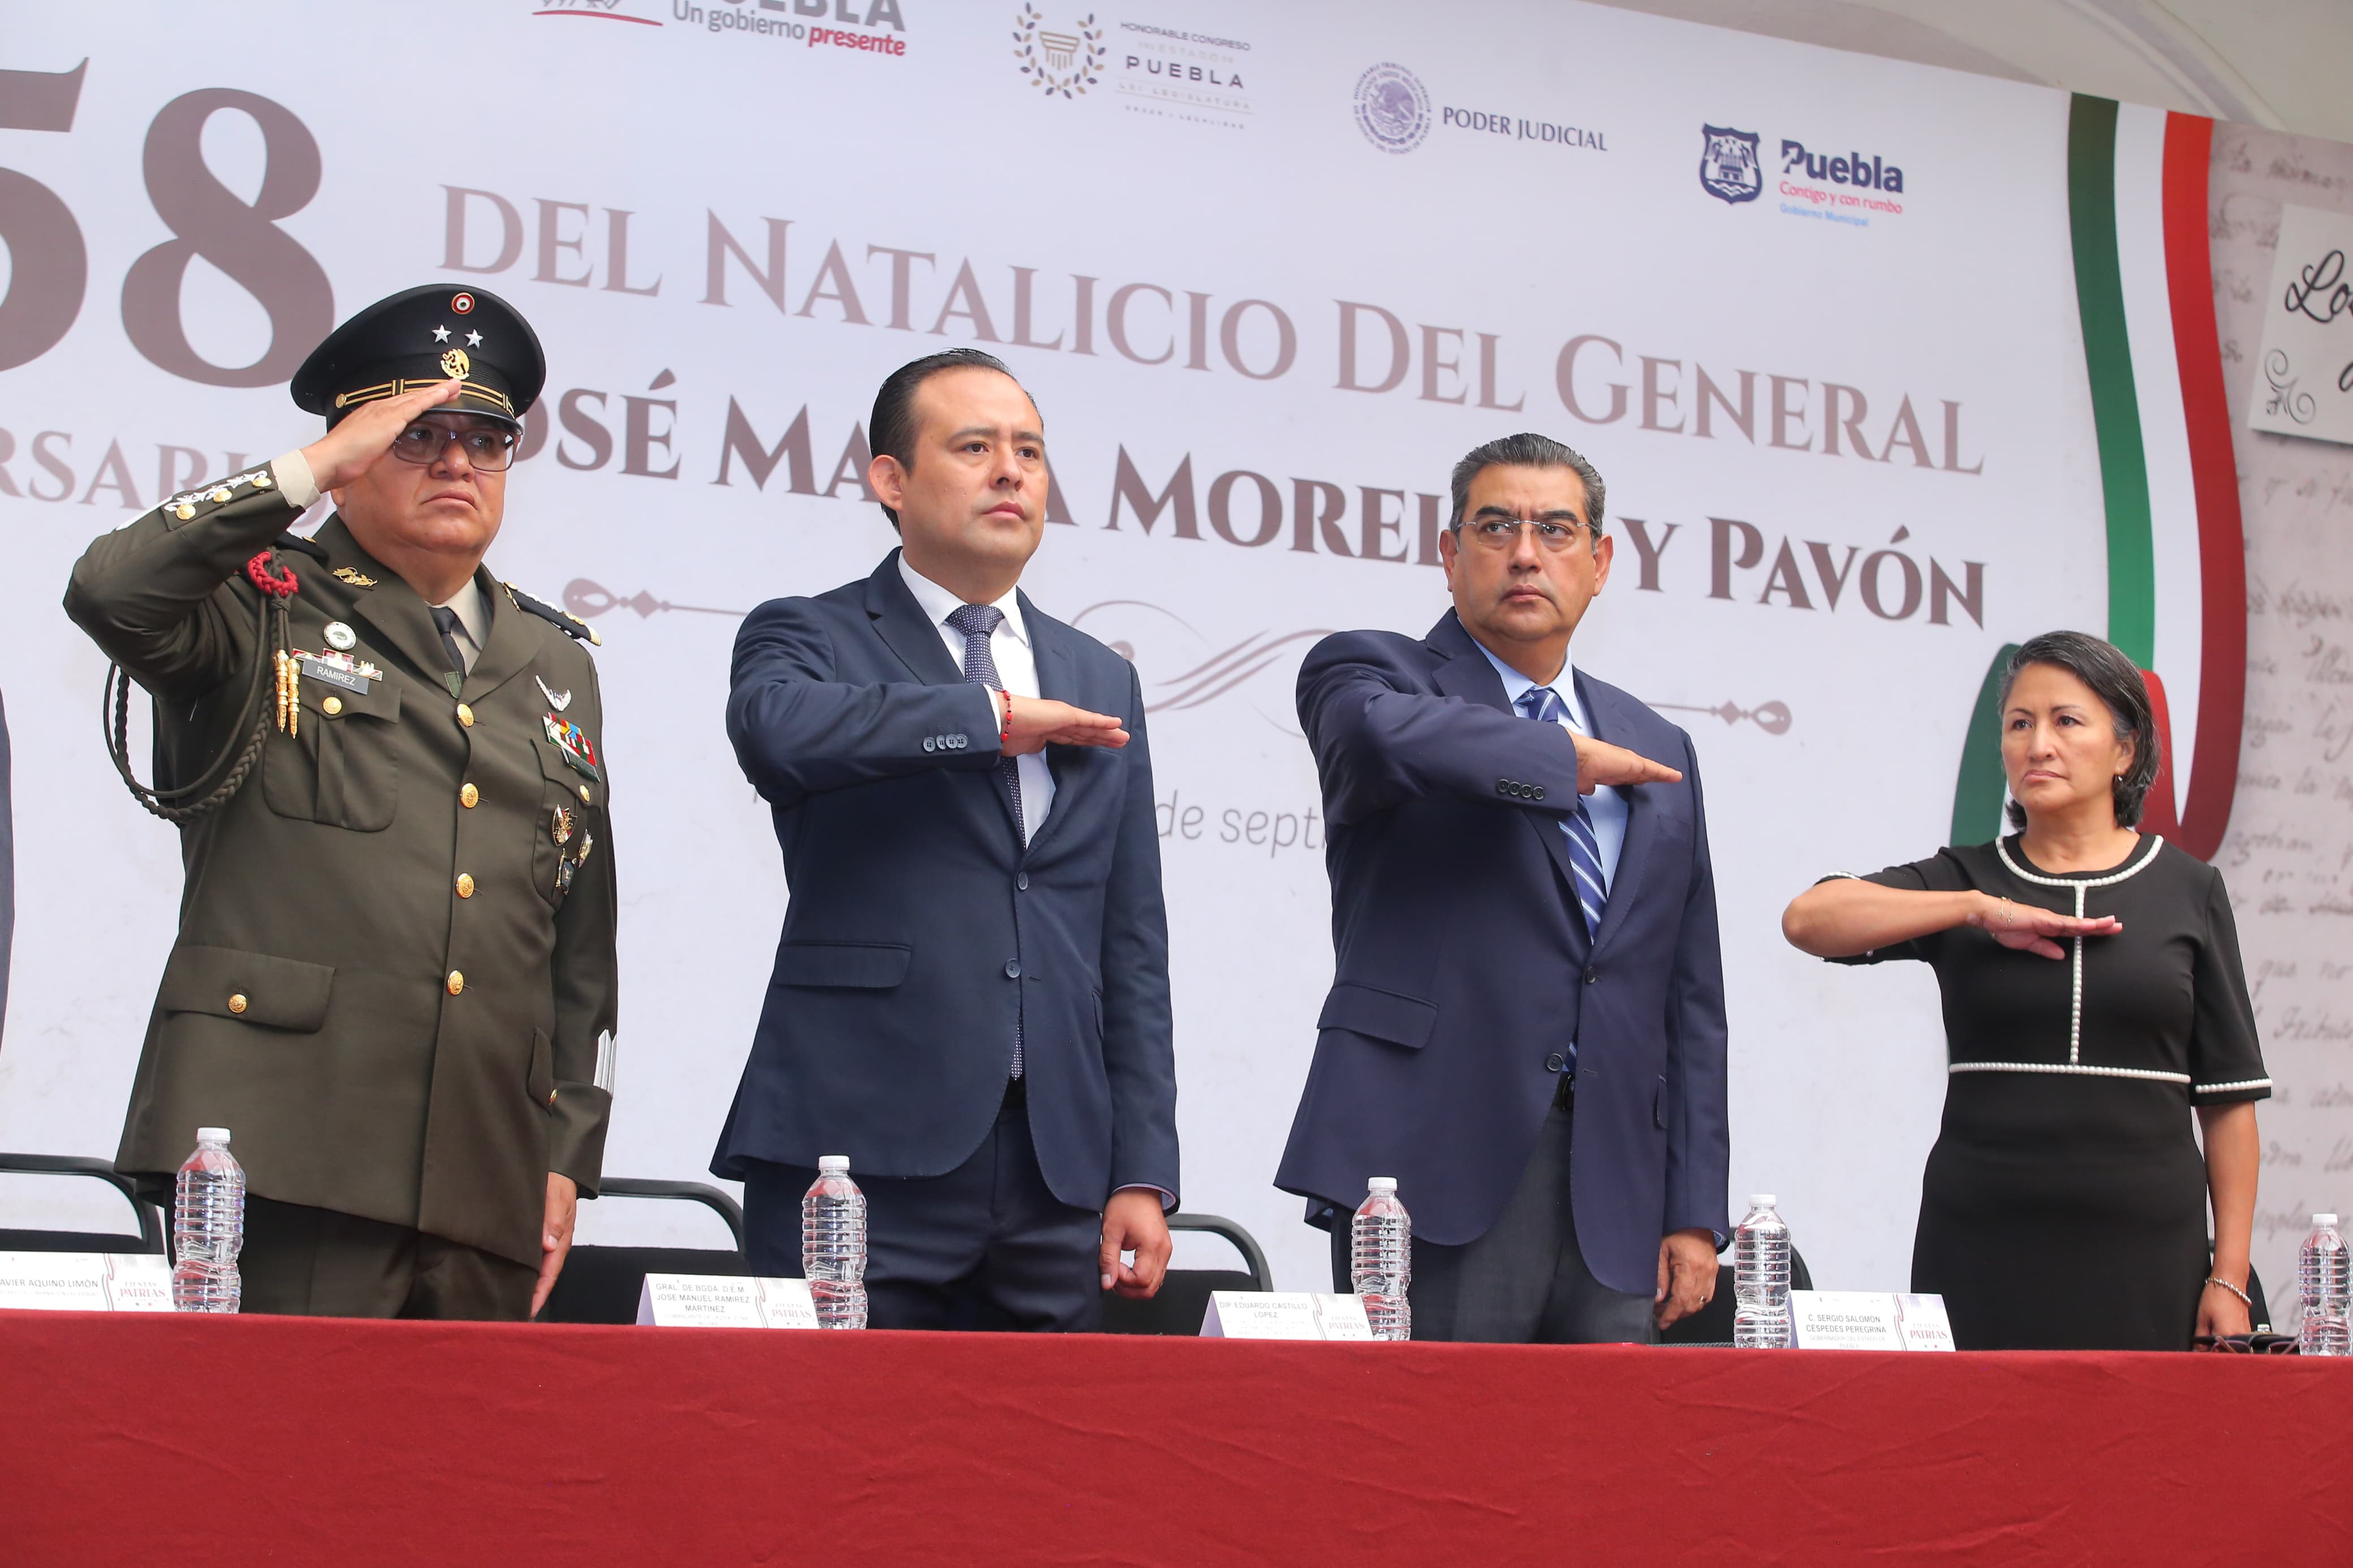 Realizan ceremonia conmemorativa por el 258 aniversario del natalicio de Morelos y Pavón